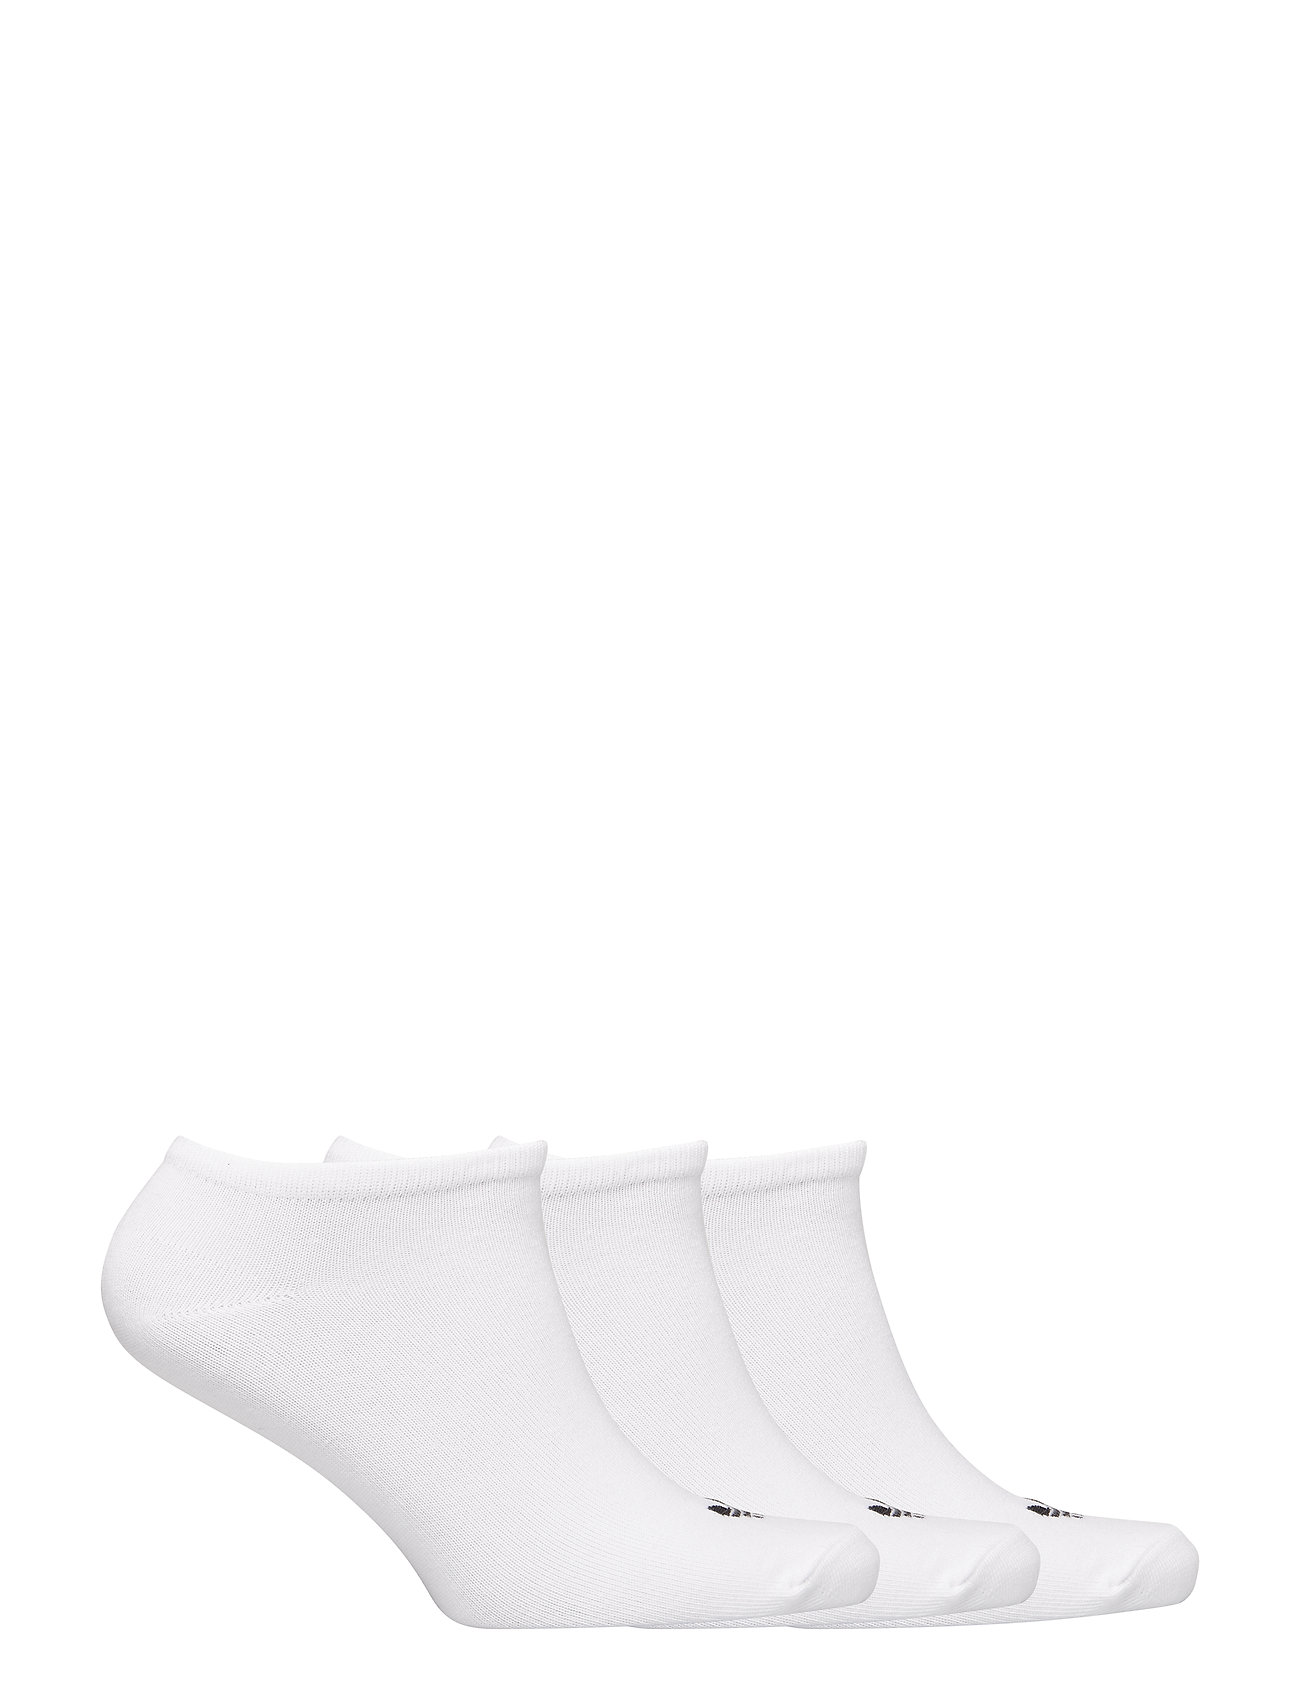 adidas Originals - TREFOIL LINER SOCK 3 PAIR PACK - strümpfe - white/white/black - 1